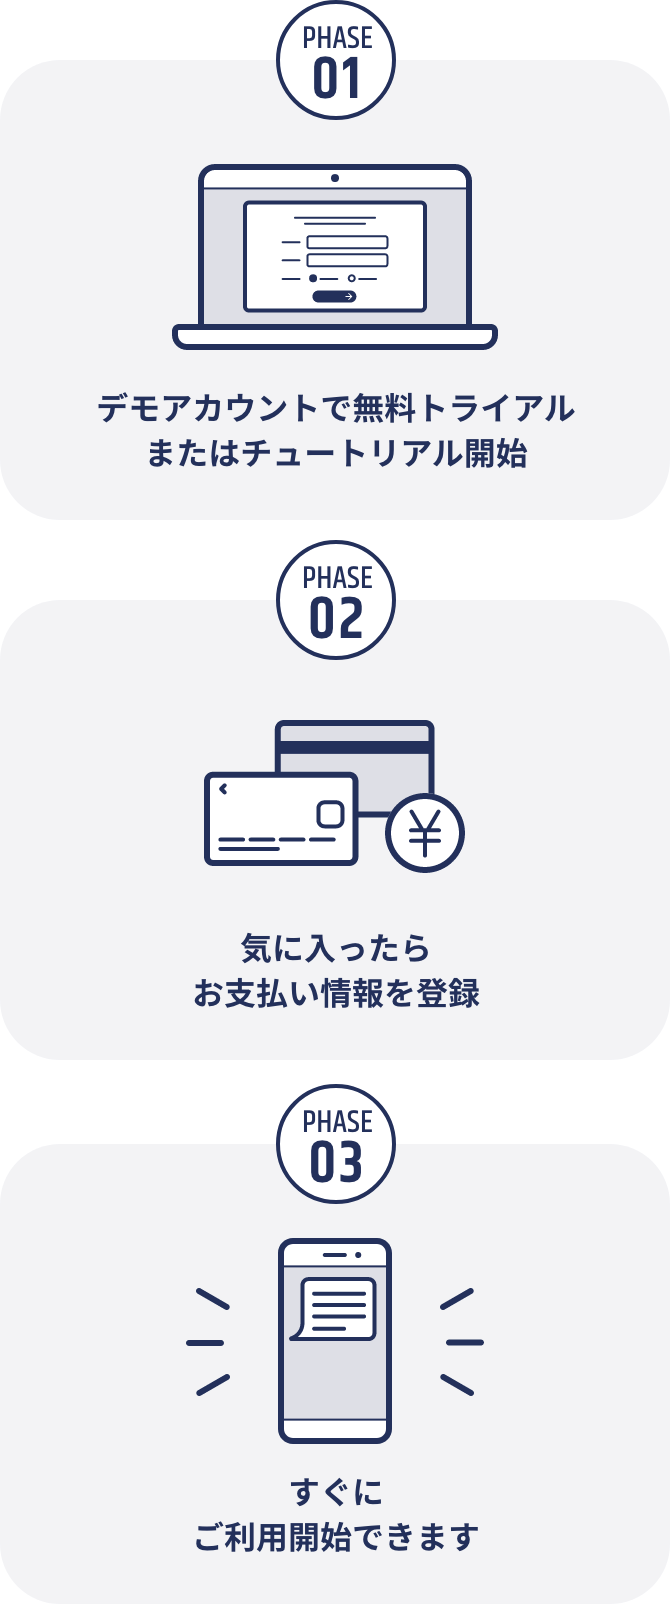 PHASE01.デモアカウントで無料トライアルまたはチュートリアル開始 PHASE02.気に入ったらお支払い情報を登録 PHASE03.すぐにご利用開始できます